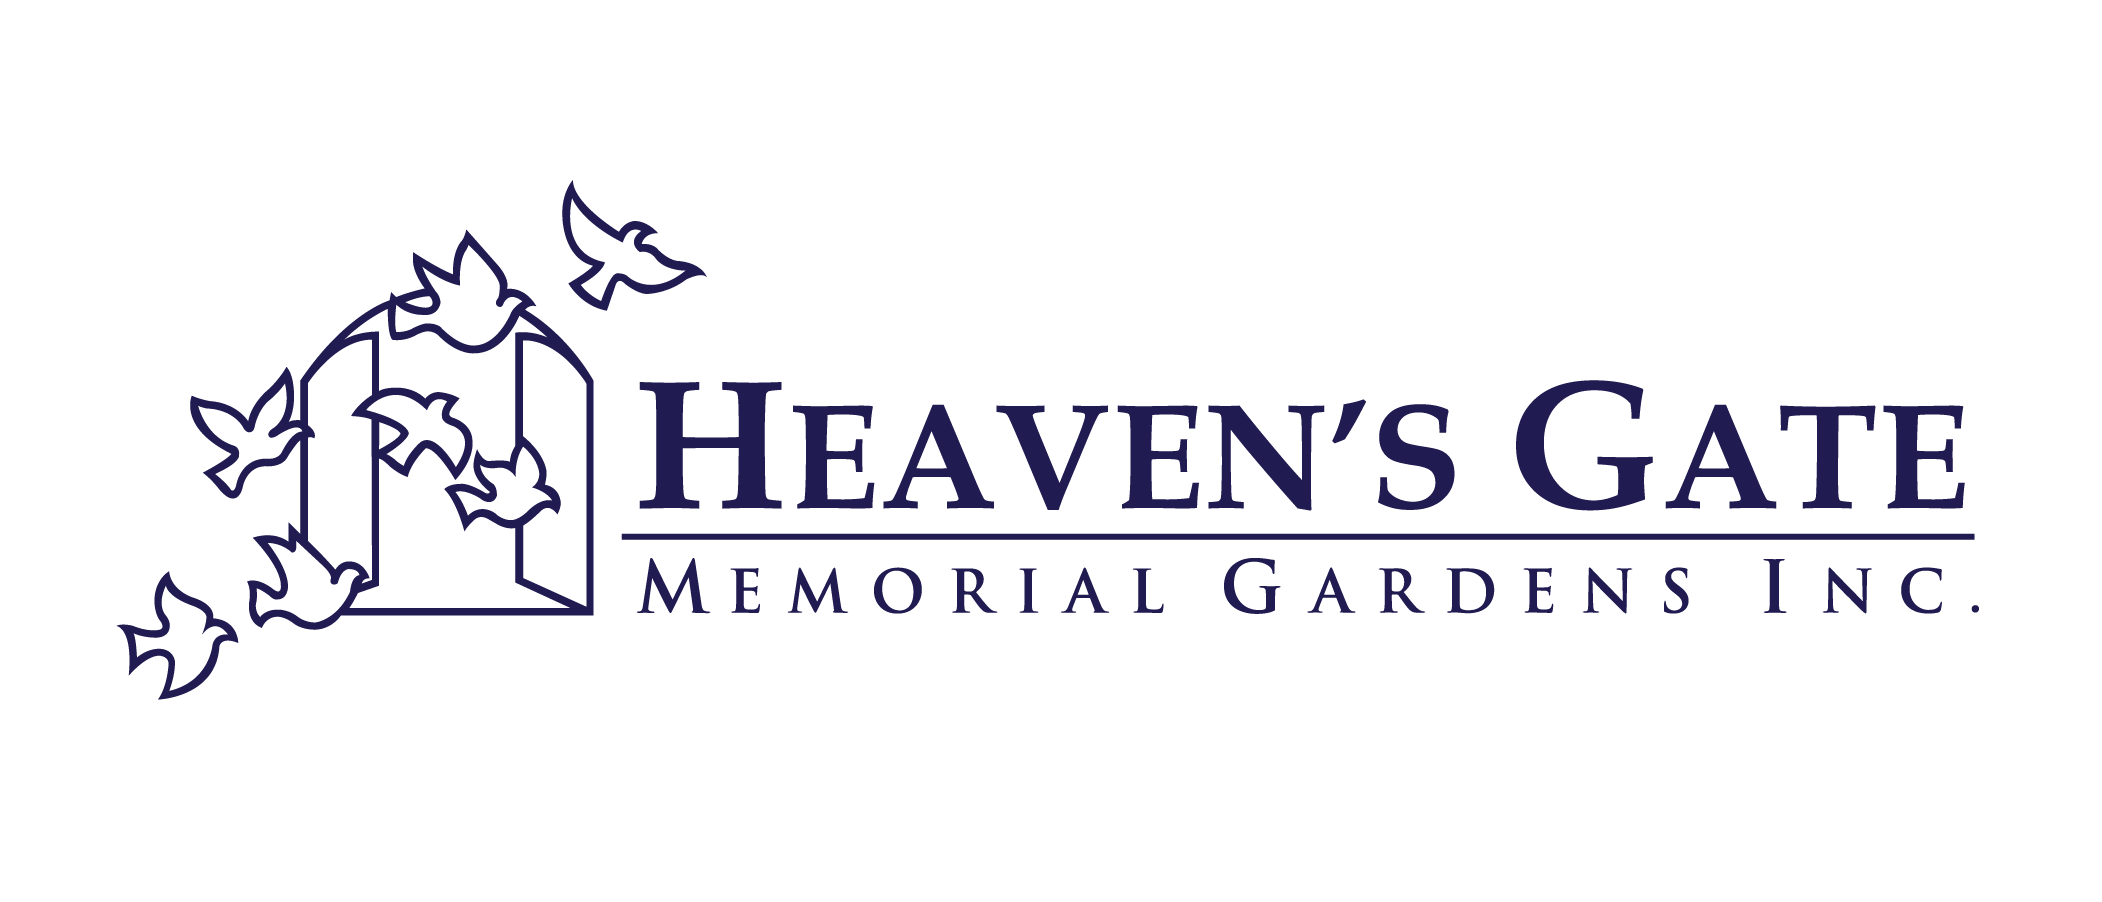 Heavens Gate Memorial Gardens Inc.